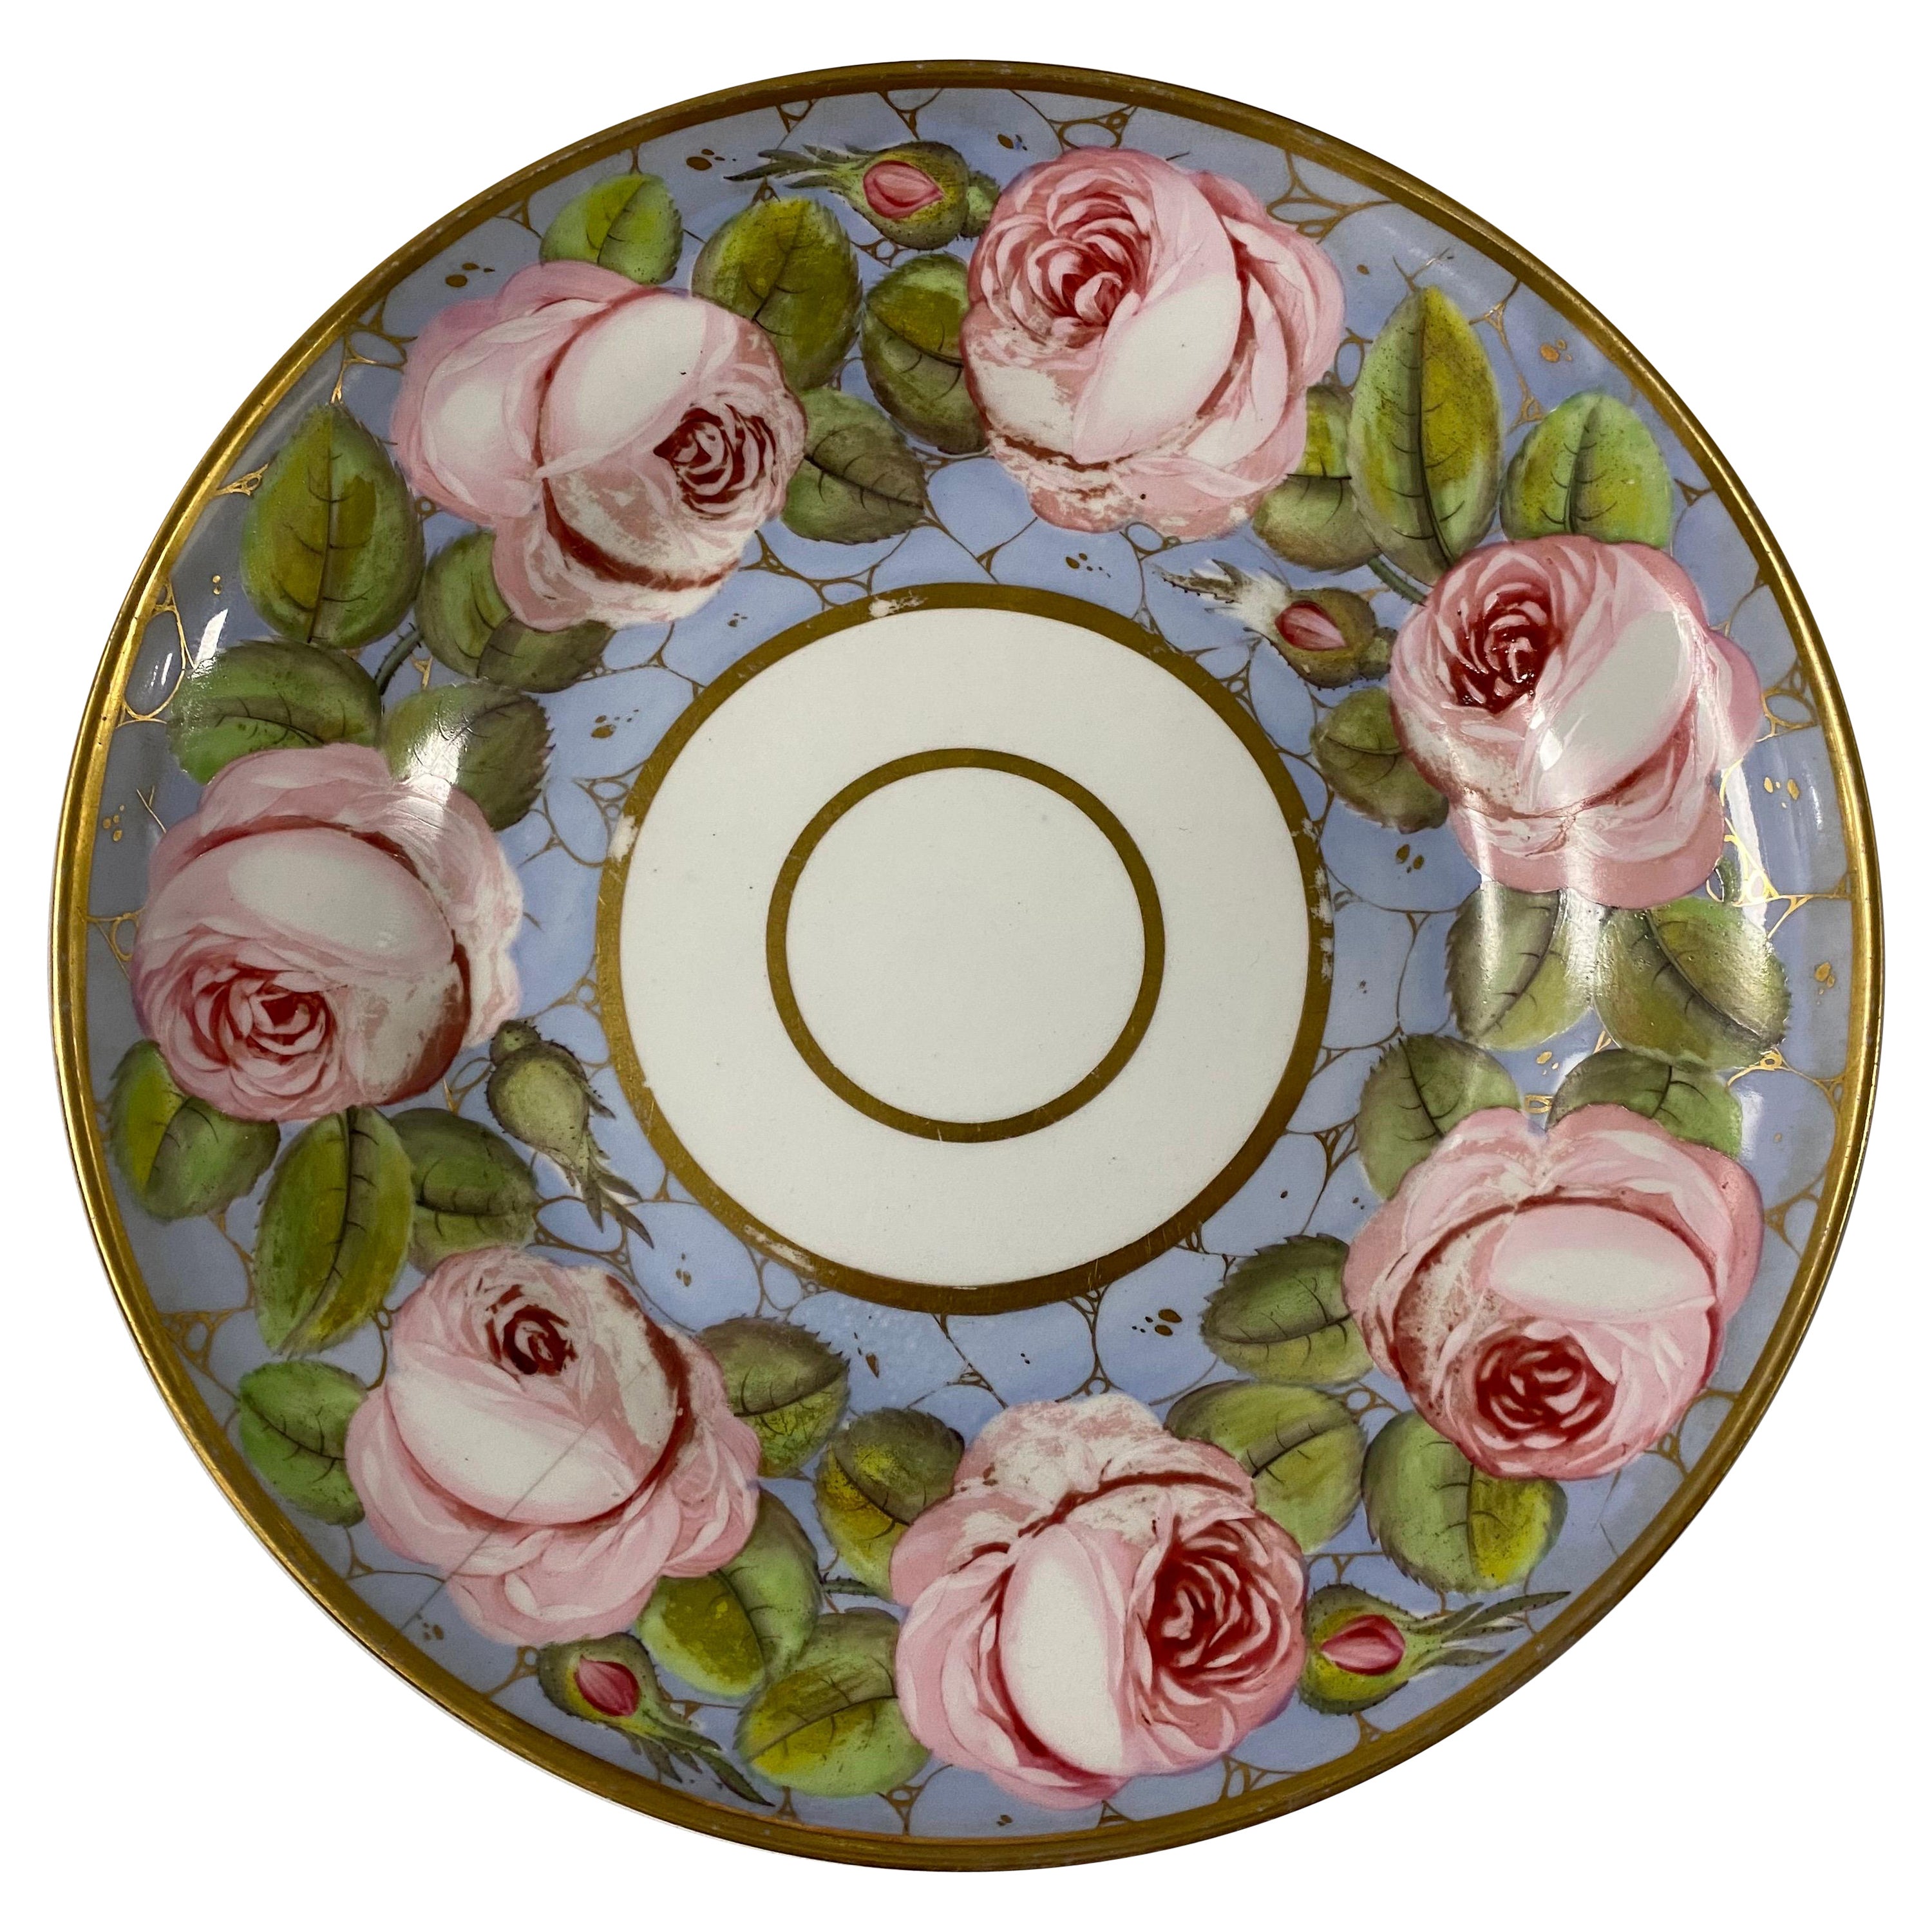 Assiette rose Spode peinte à la main, anglaise, 19ème siècle